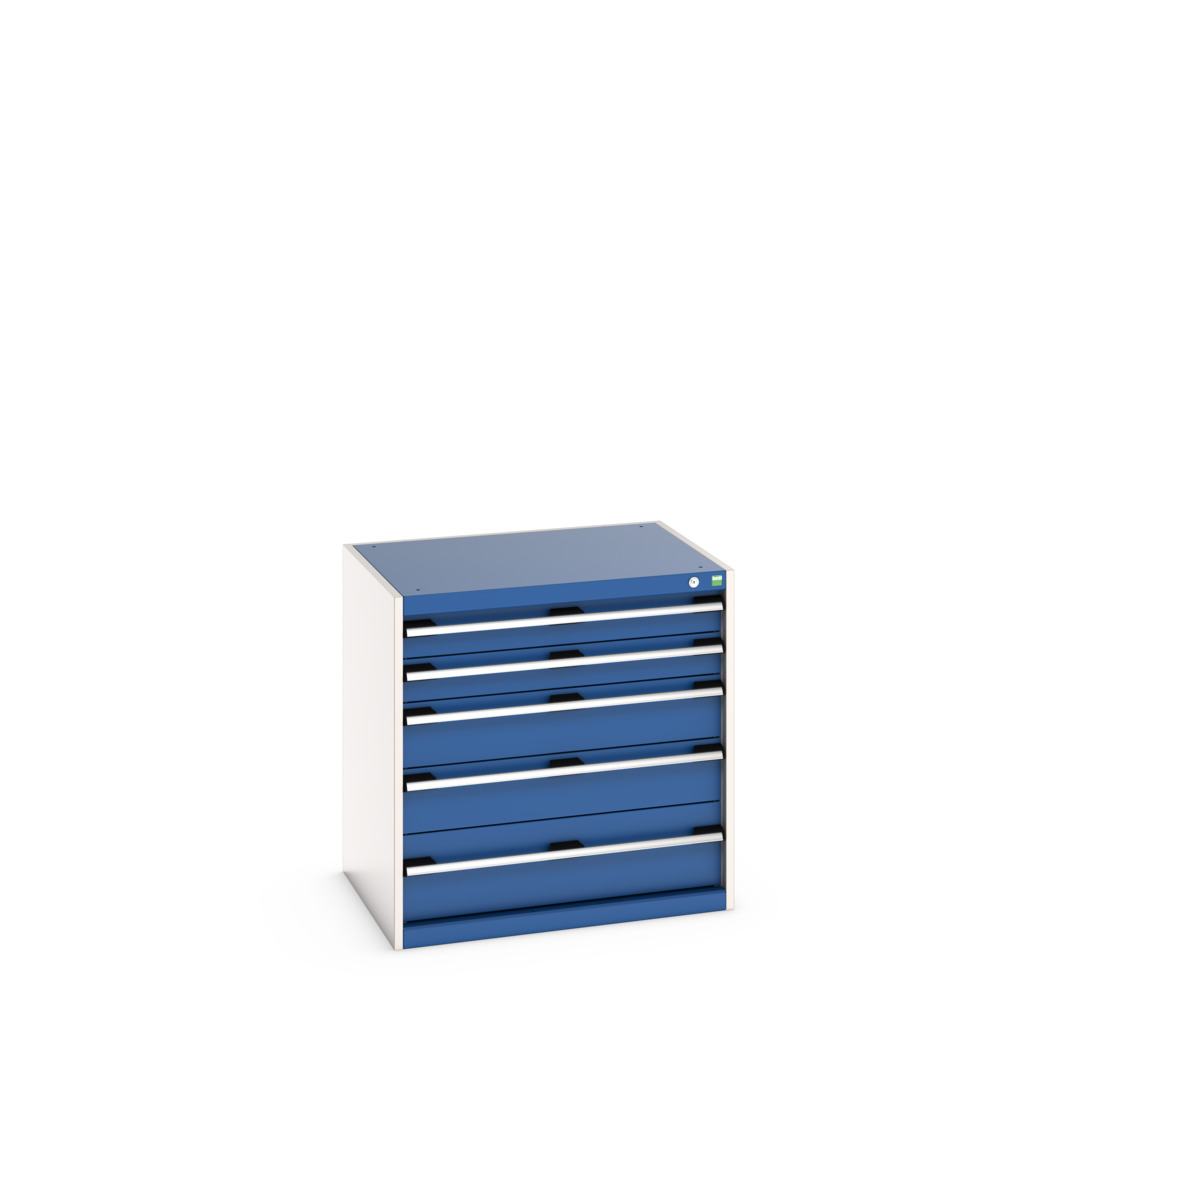 40020025.11V - cubio drawer cabinet